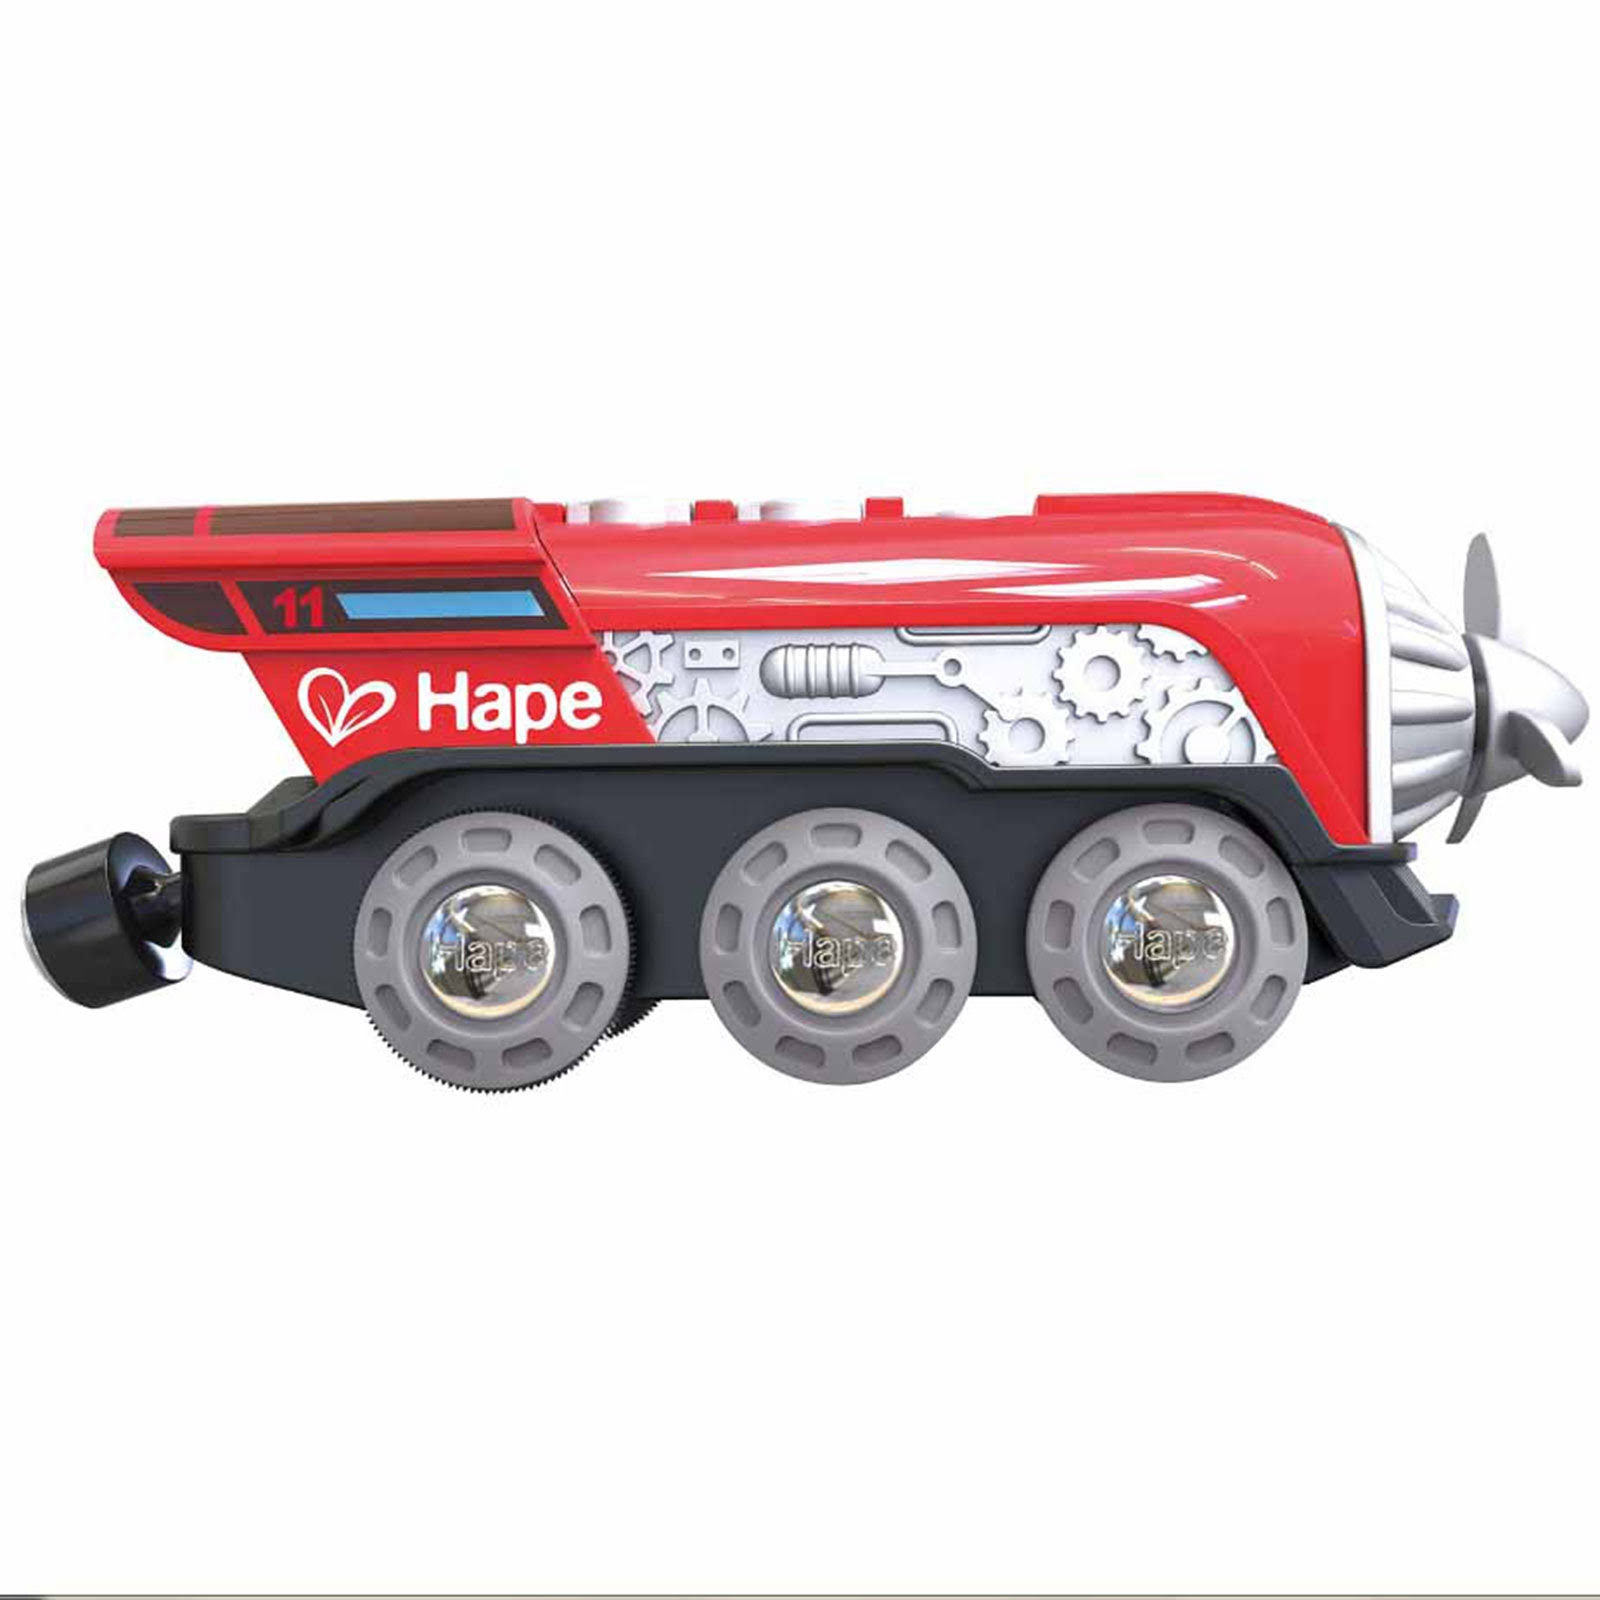 Hape E3750 Propeller Engine Toys